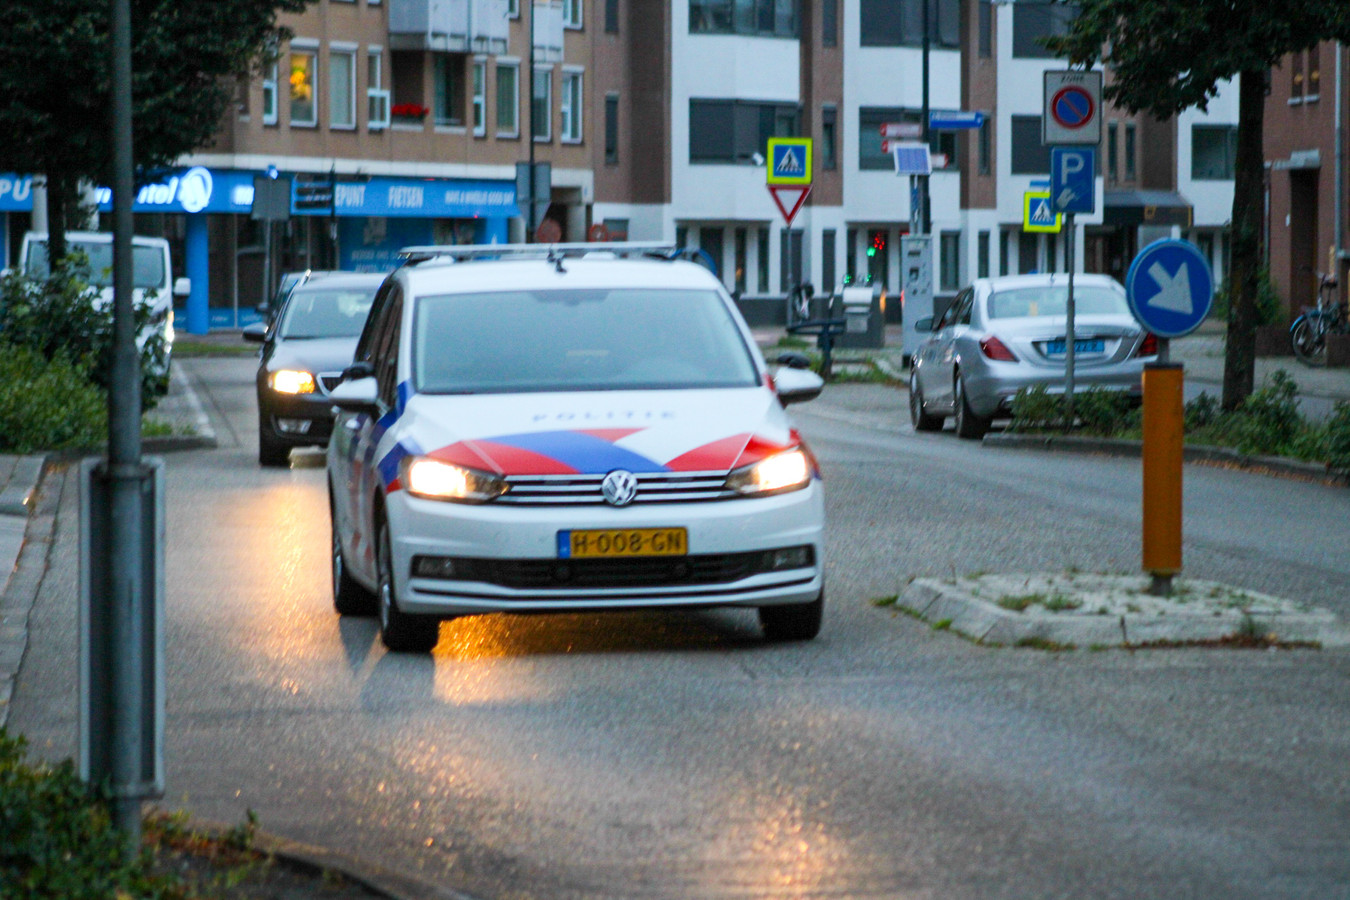 De politie zoekt man na beroving bij station Apeldoorn.